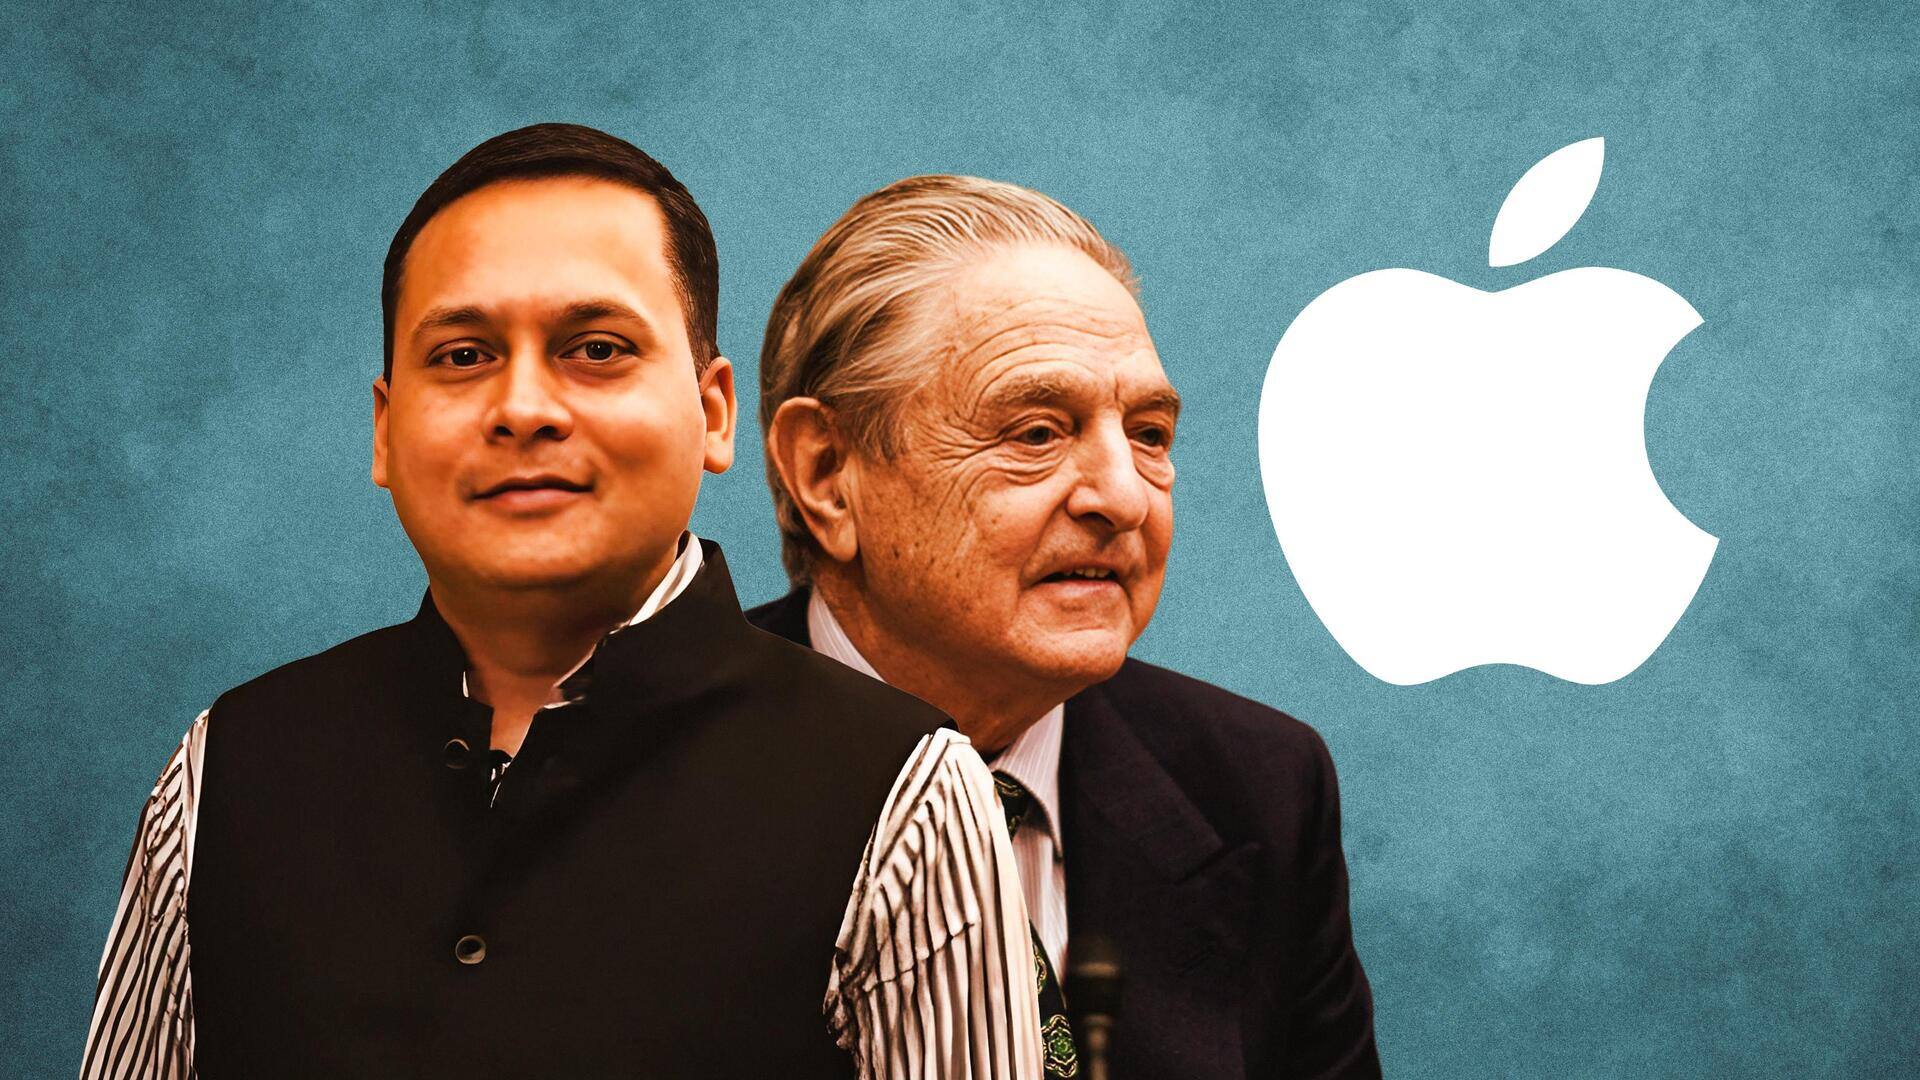 BJP draws link between Apple's hacking row to George Soros